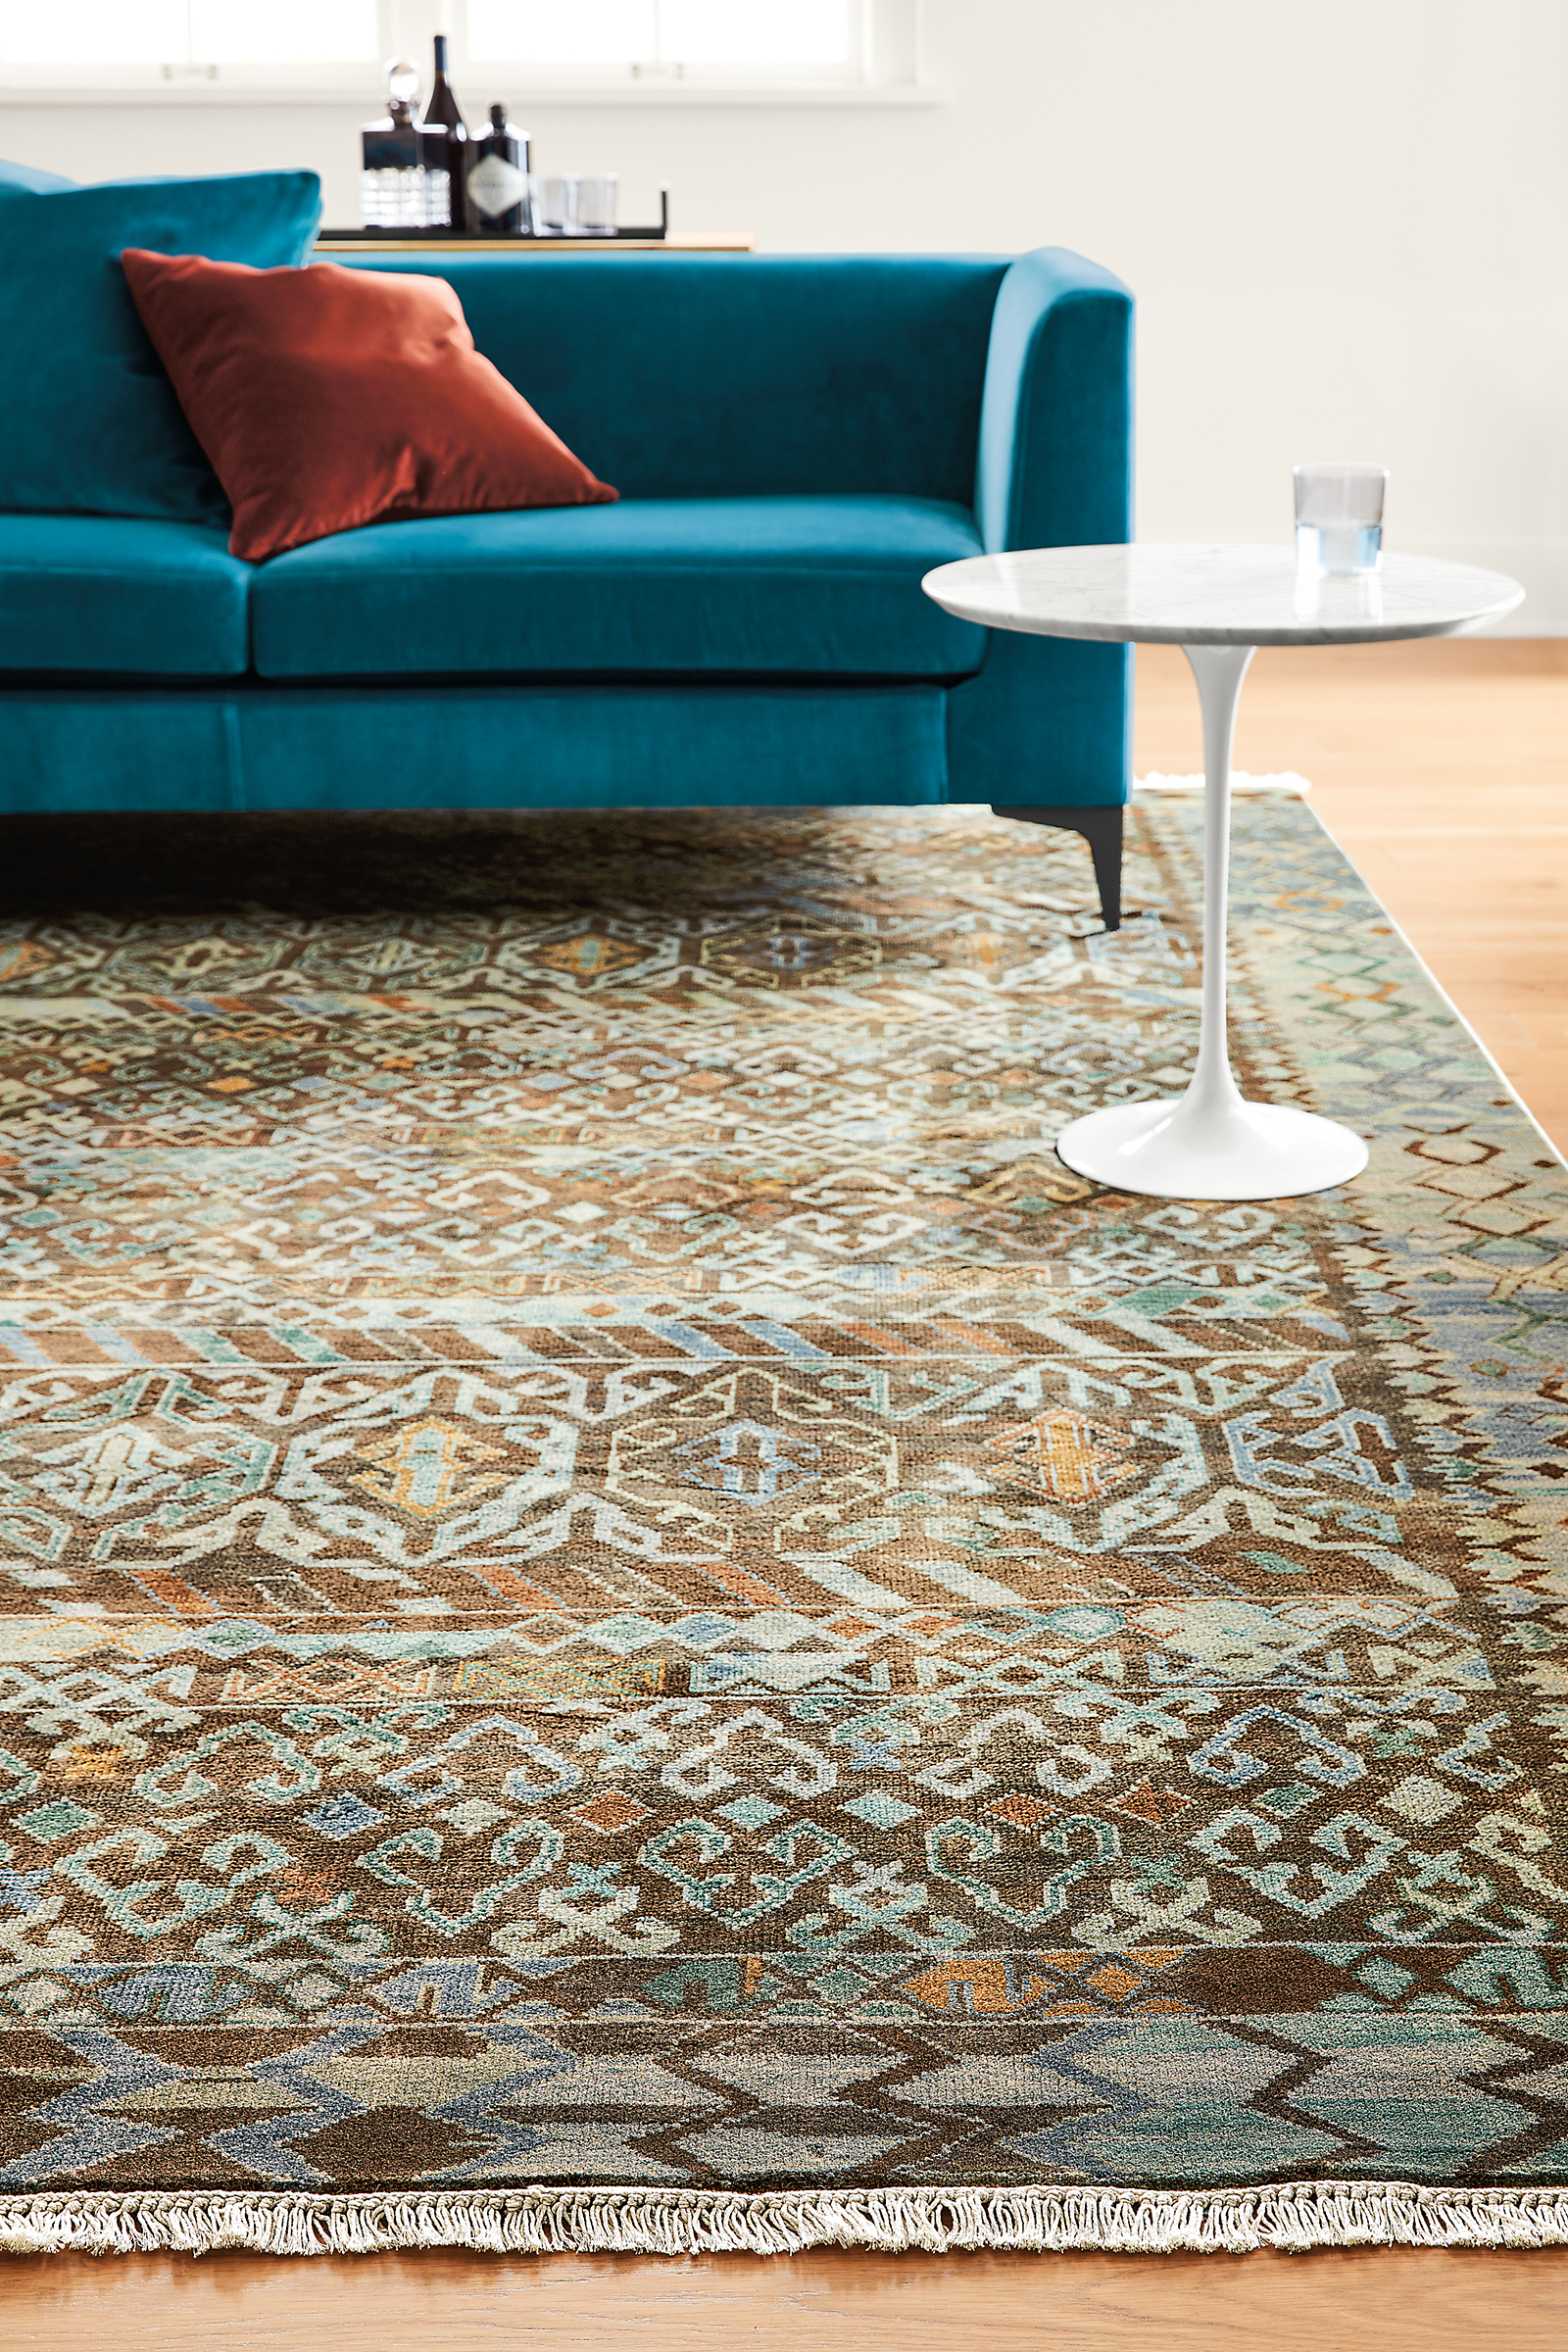 Detail of Timuri rug.